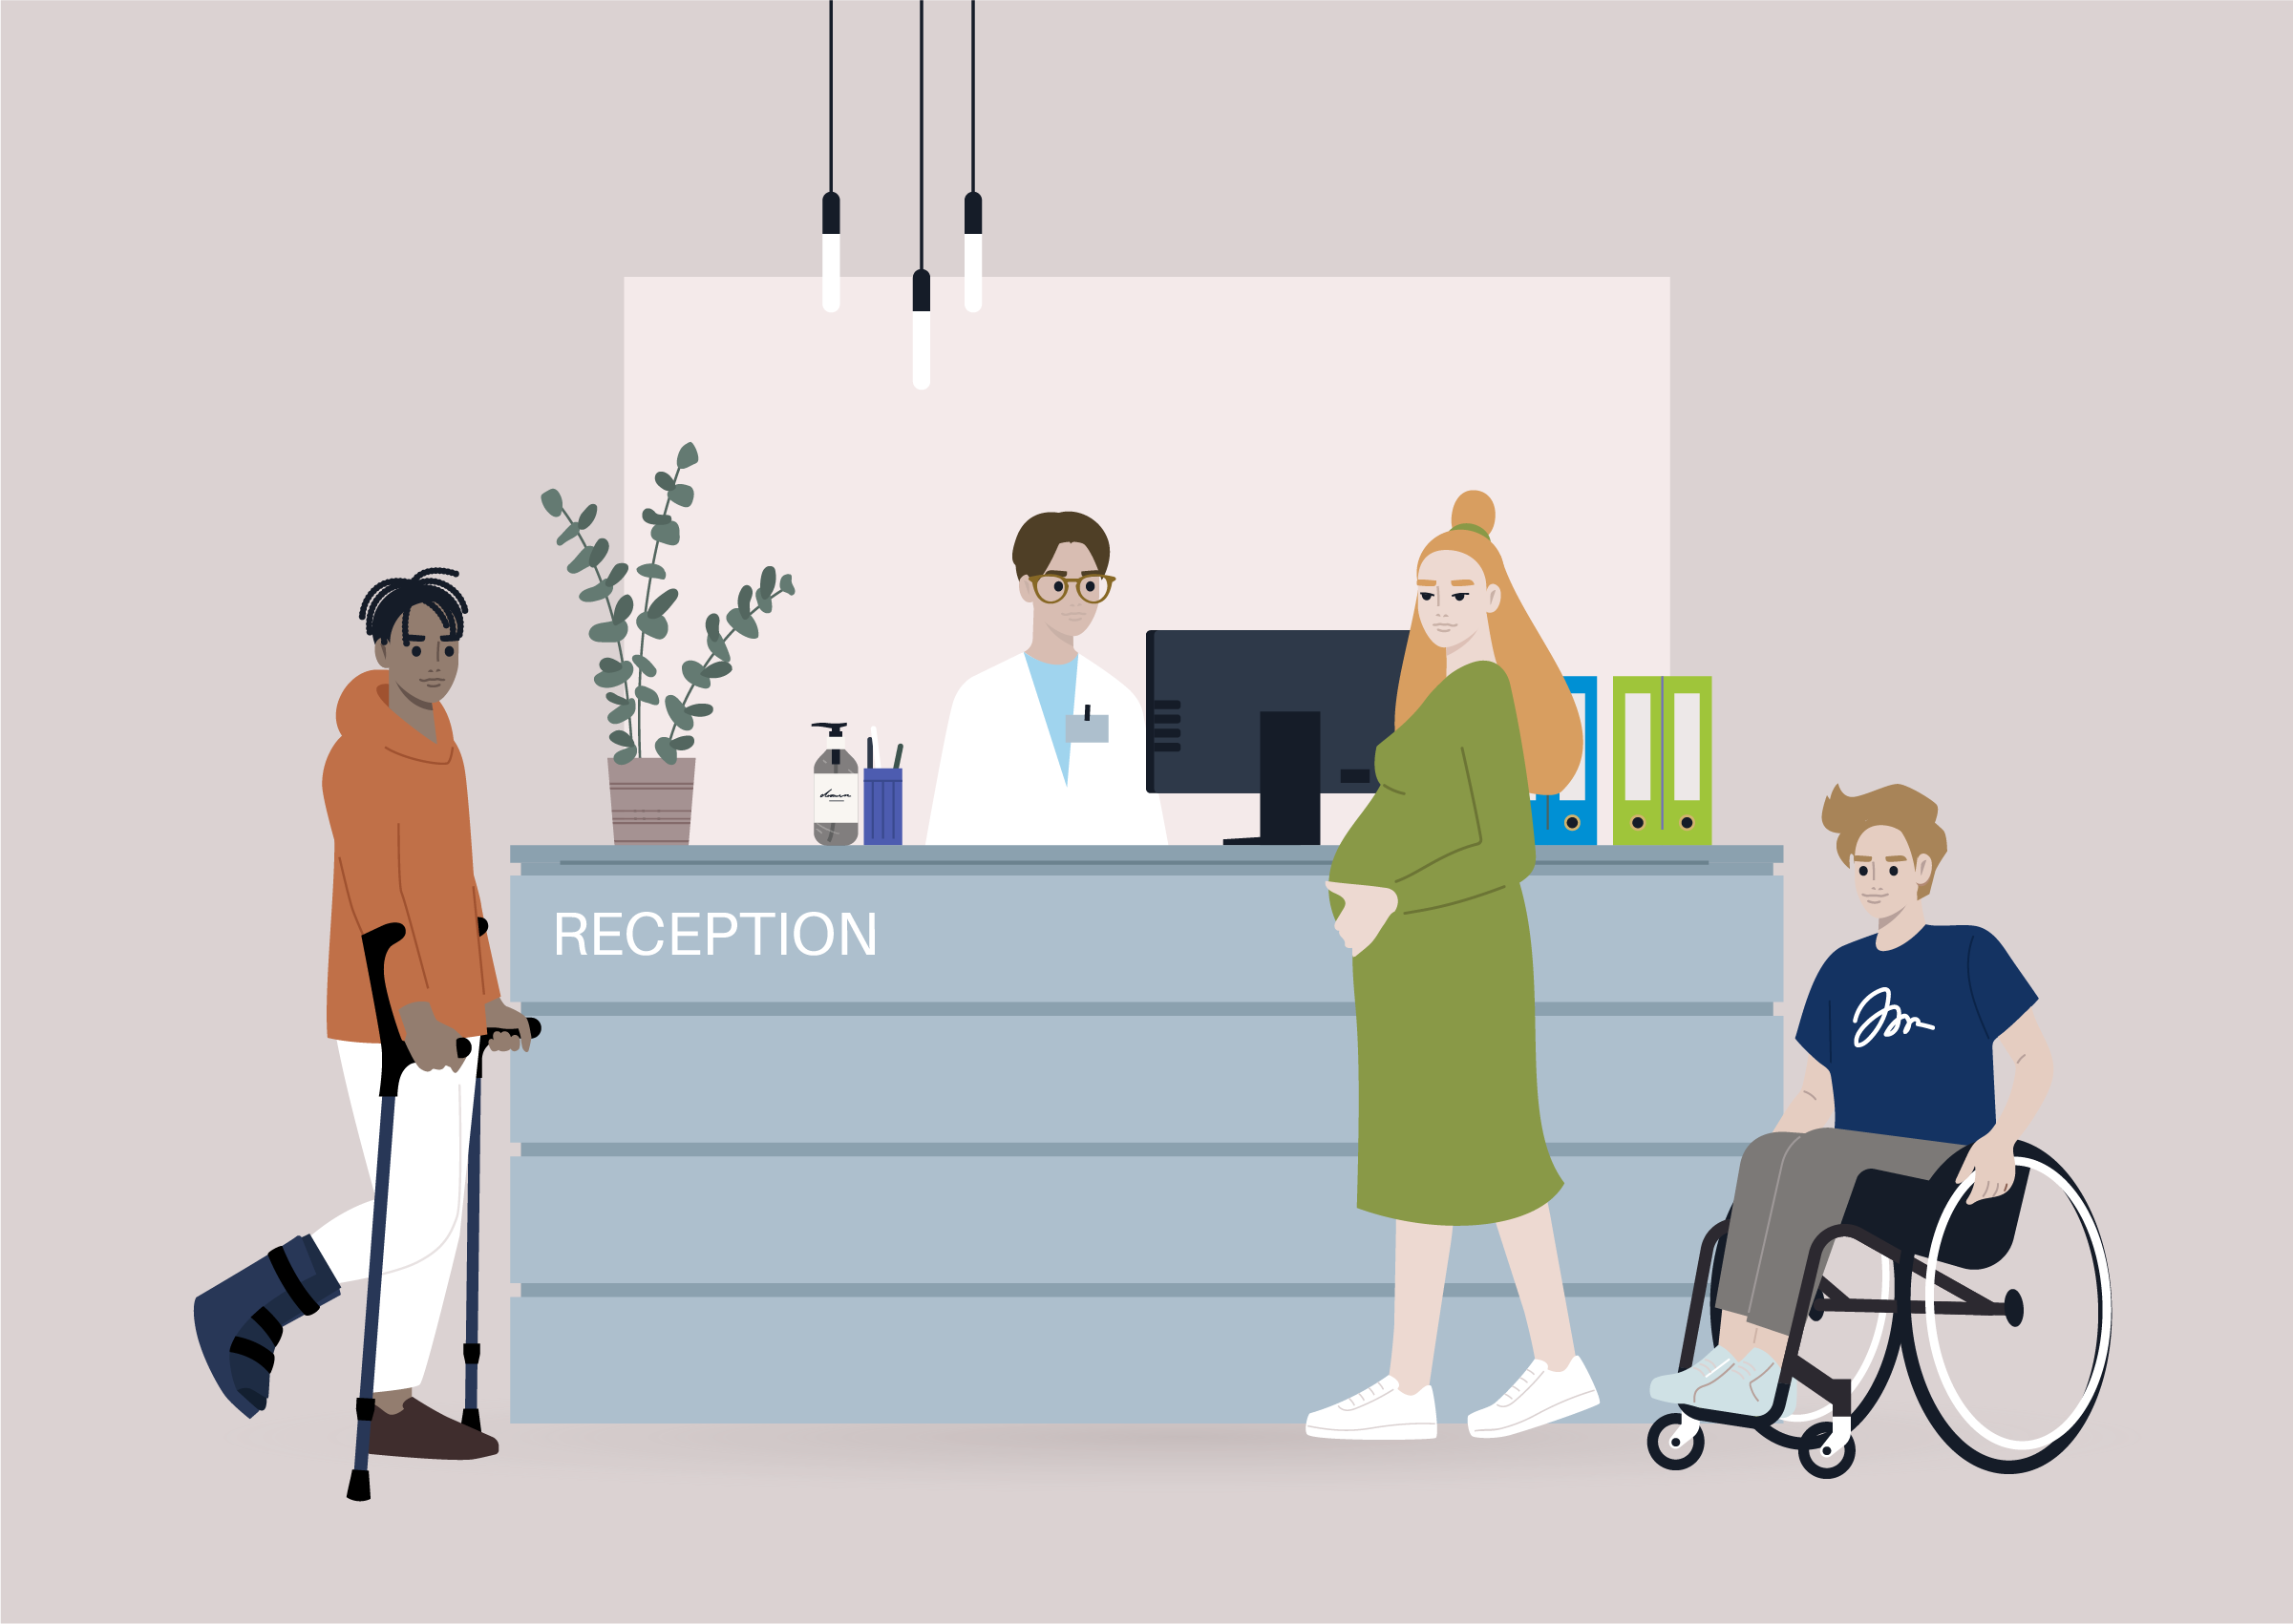 En reception med en person bakom disken och tre besökare. En på kryckor, en gravid kvinna och en kille i rullstol. 